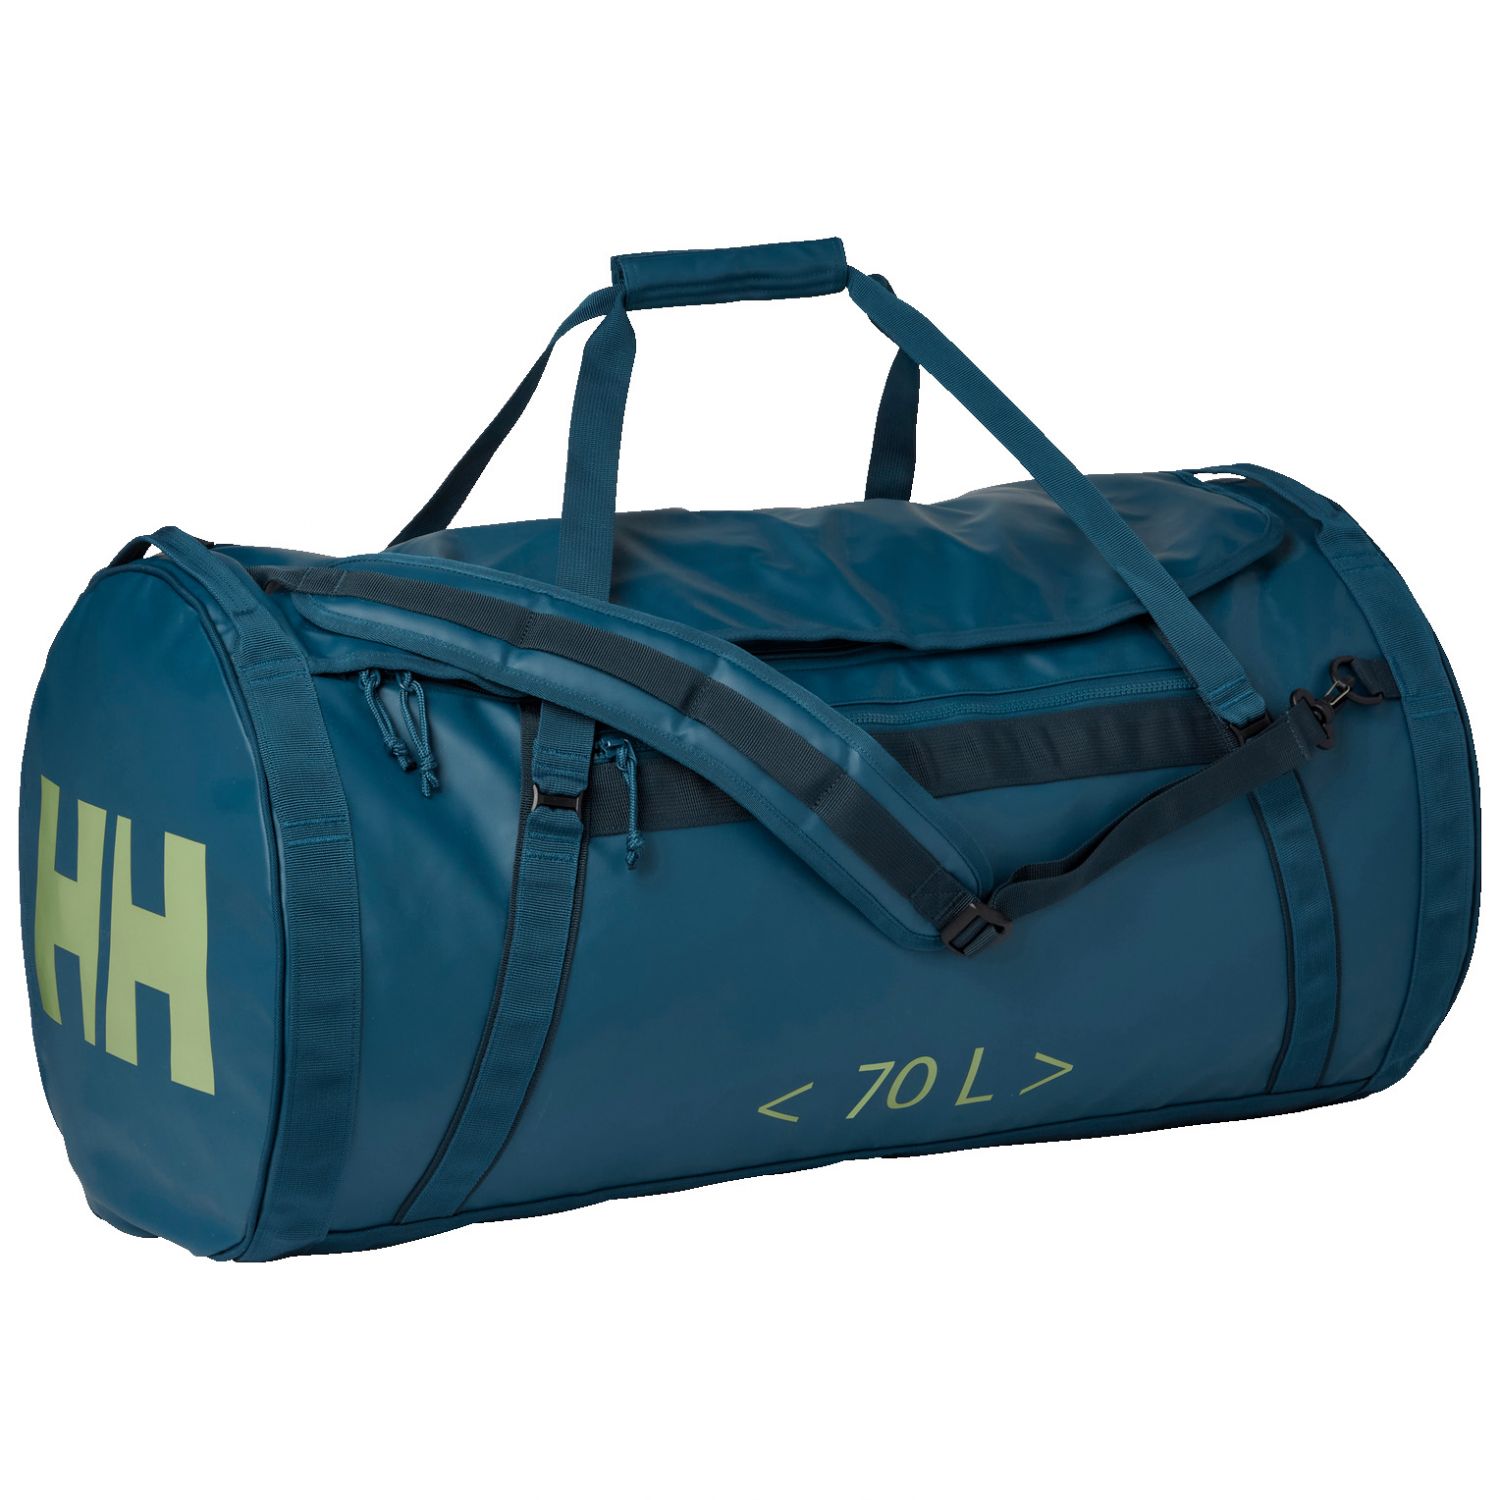 Brug Helly Hansen HH Duffel Bag 2, 70L, deep dive til en forbedret oplevelse